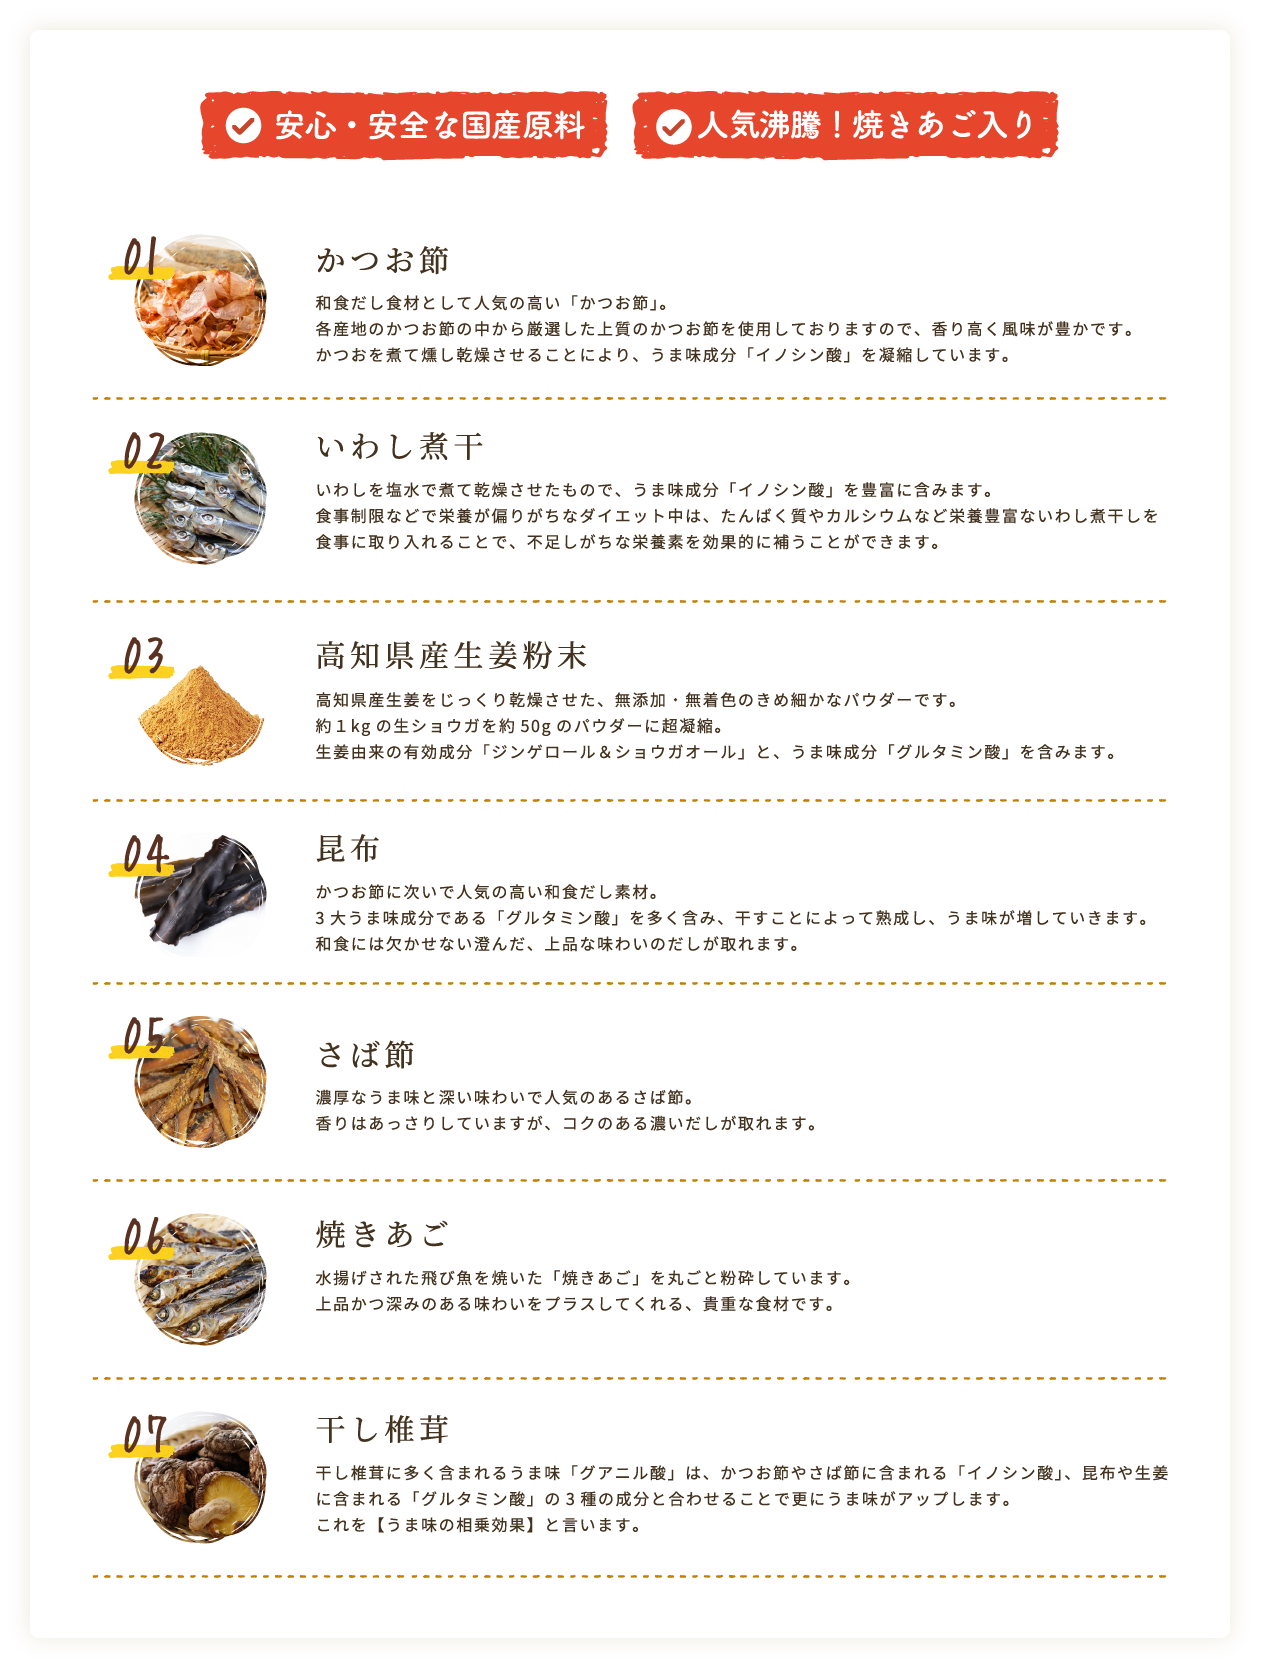 かつお節、いわし煮干、高知県産生姜粉末、昆布、さば節、焼きあご、干し椎茸